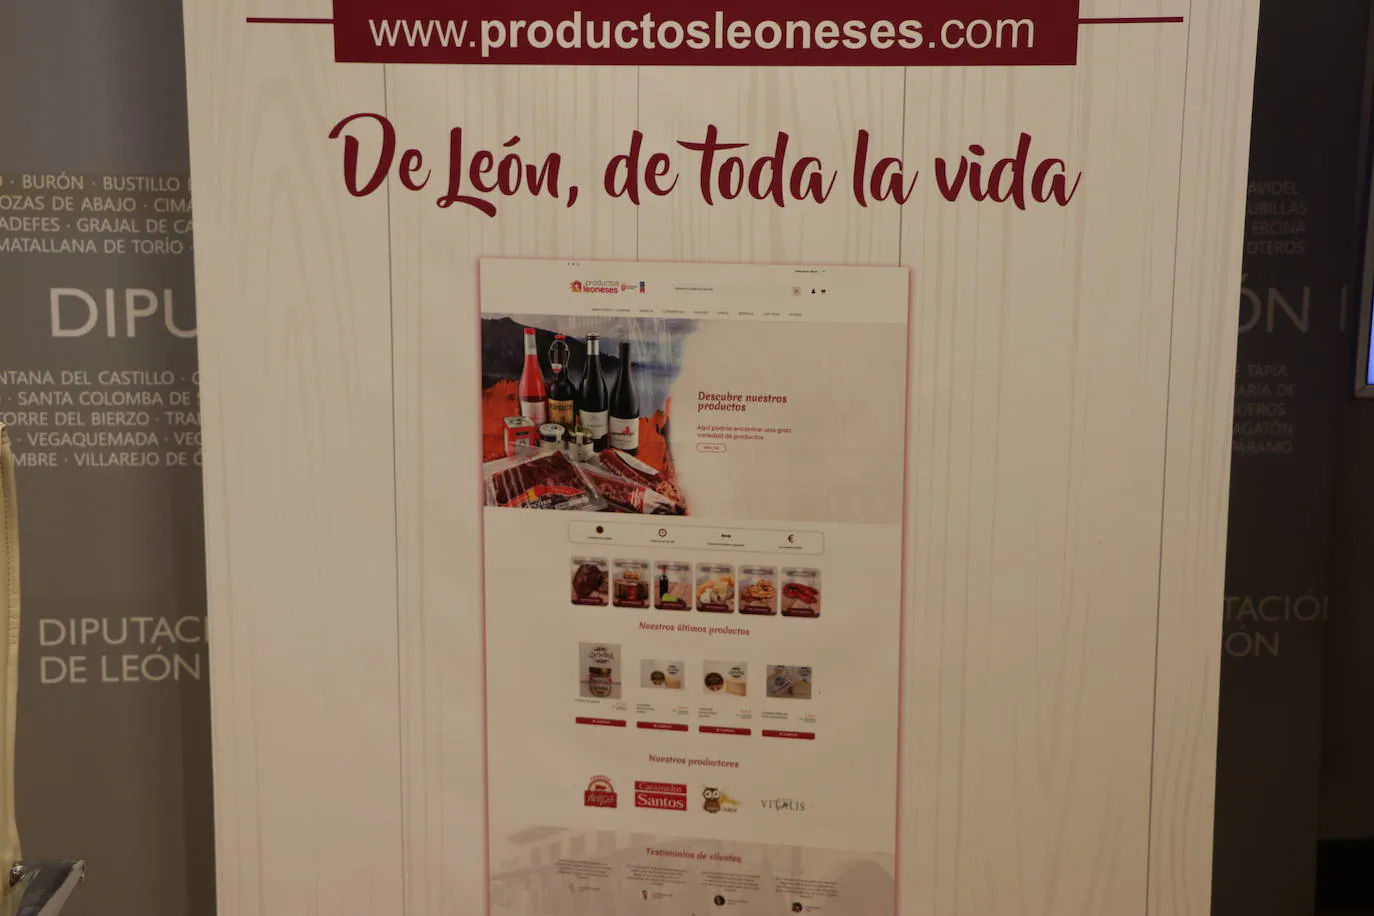 Presentación del a tienda online de productos de León